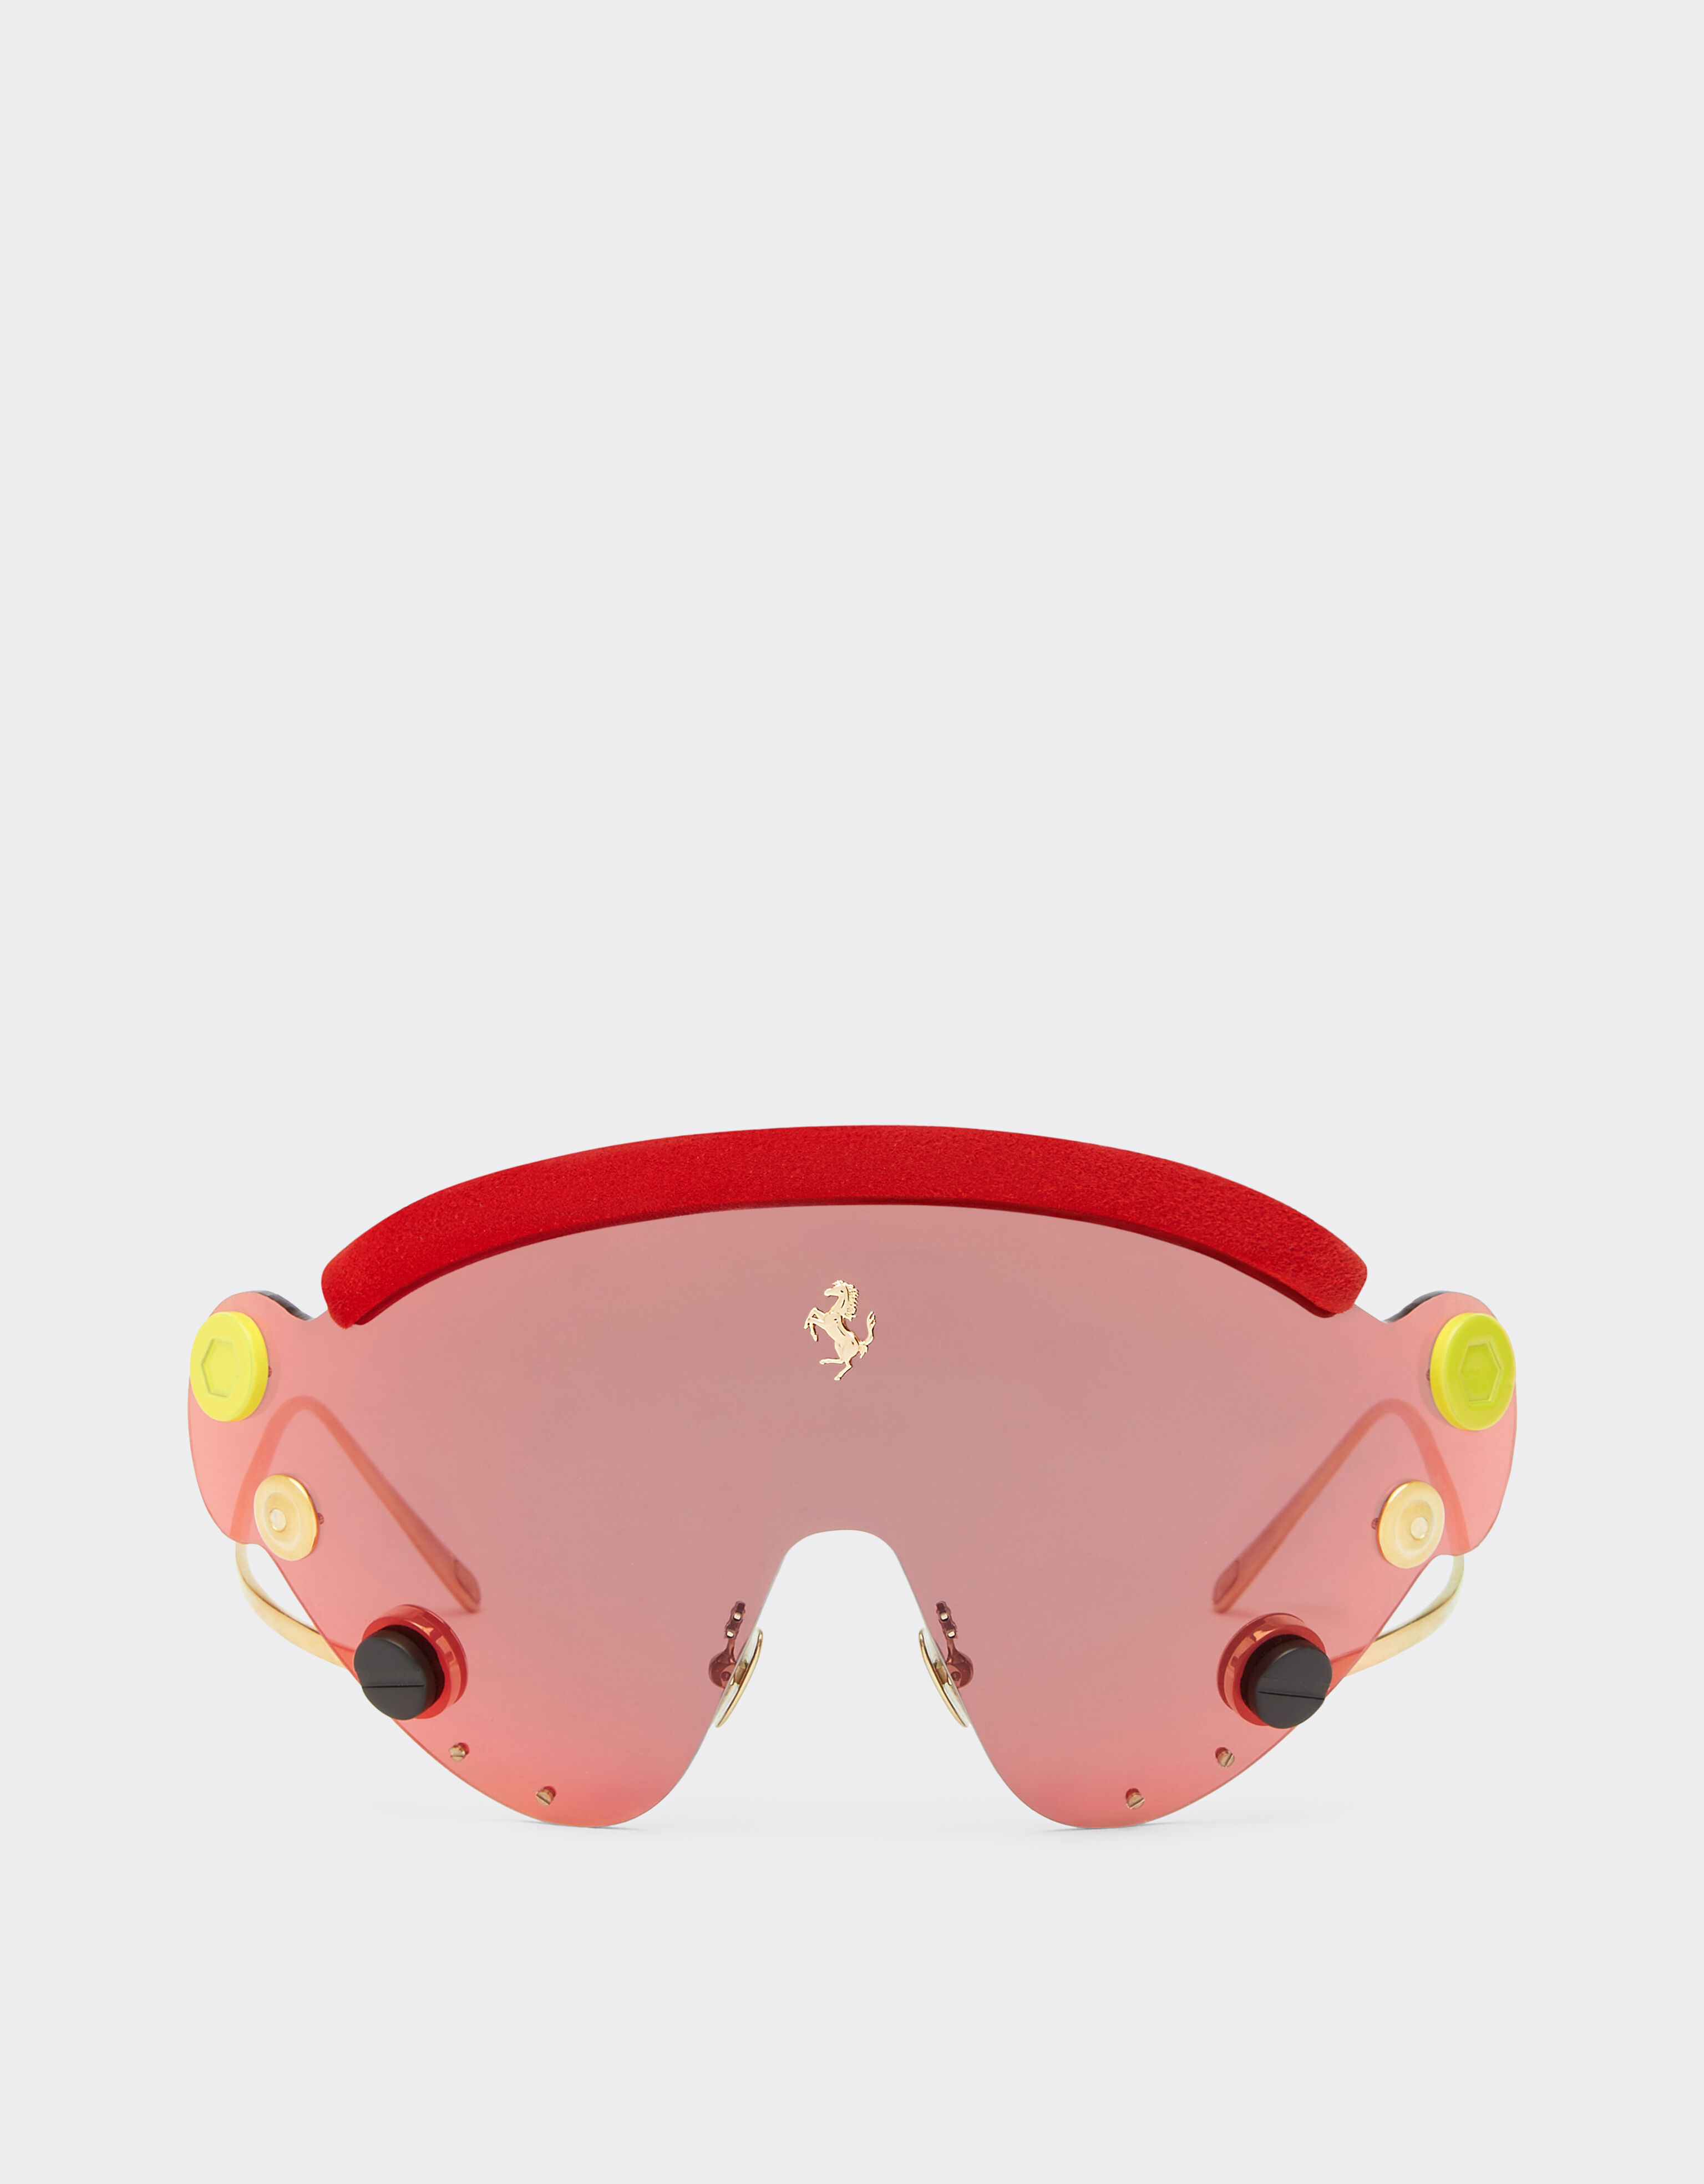 Ferrari 限量版法拉利红色镜面面罩式红色与金色金属太阳镜 红色 F1243f